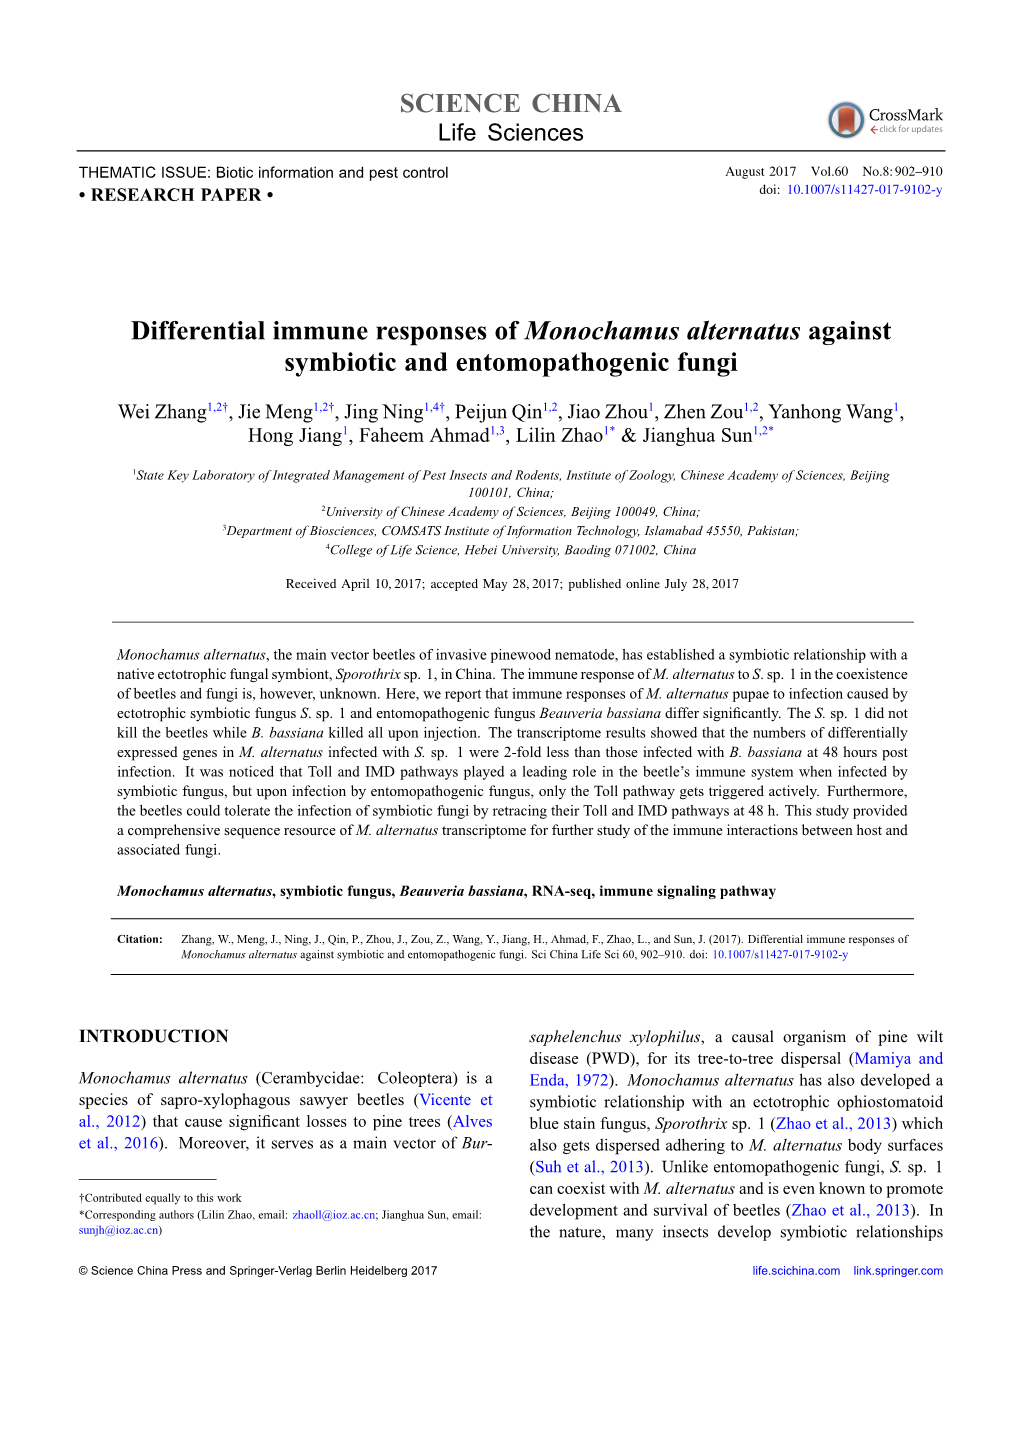 SCIENCE CHINA Differential Immune Responses of Monochamus Alternatus Against Symbiotic and Entomopathogenic Fungi